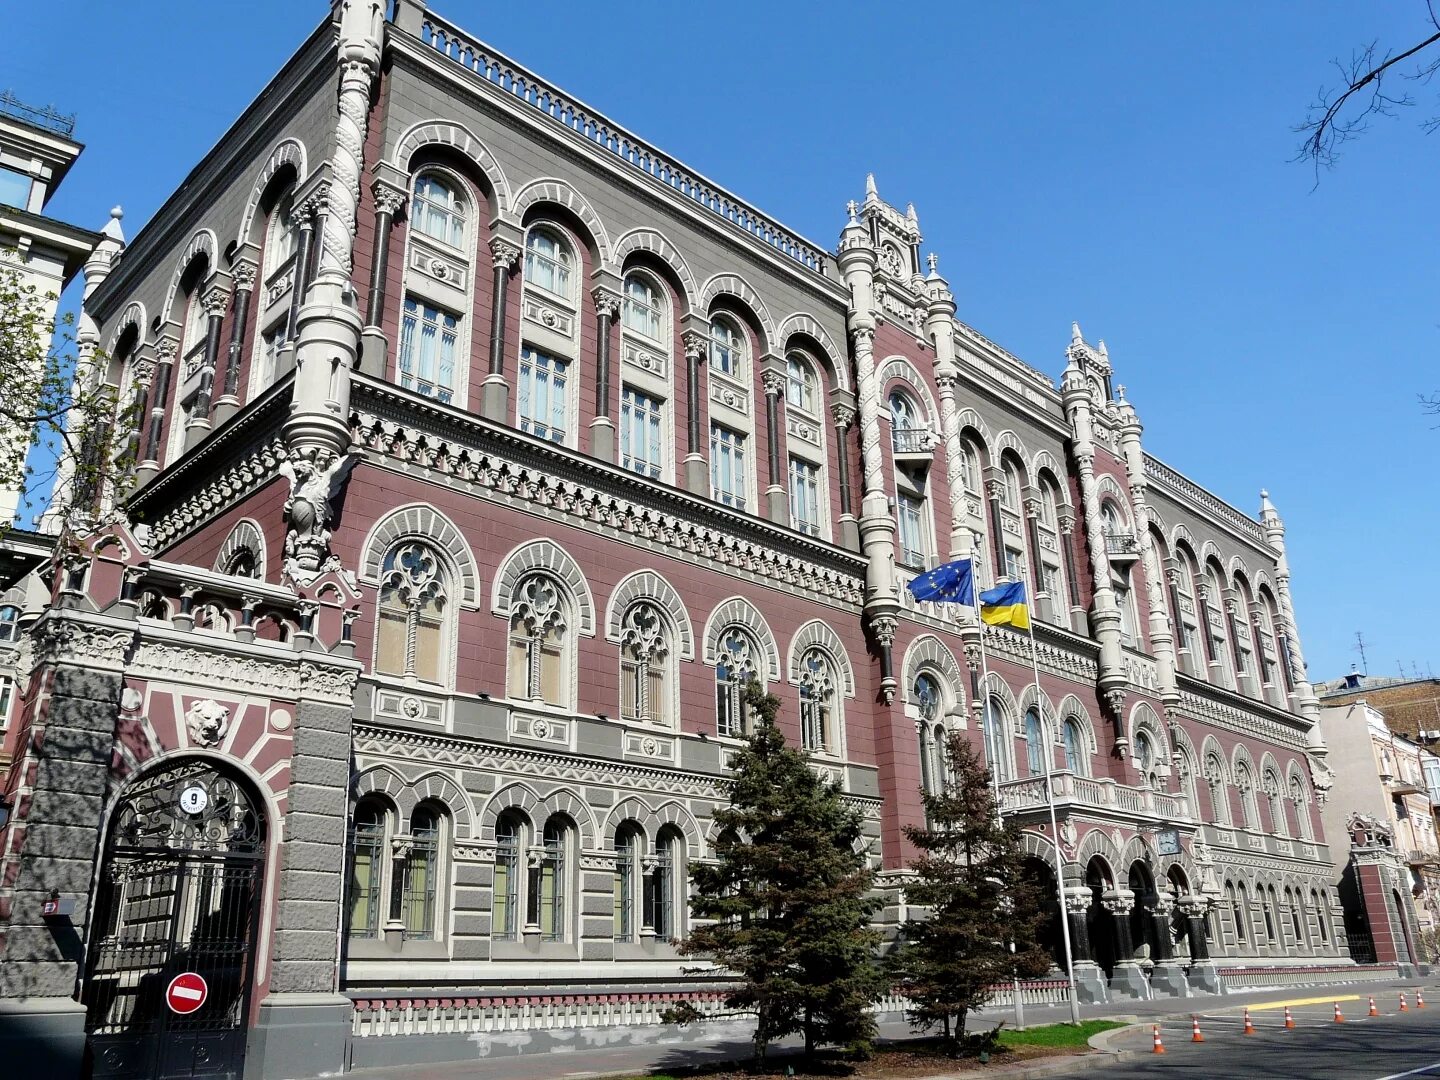 Национальный банк Украины 2005. Национальный банк Грузии. Национальный банк Украины внутри. Здание национального банка Украины.